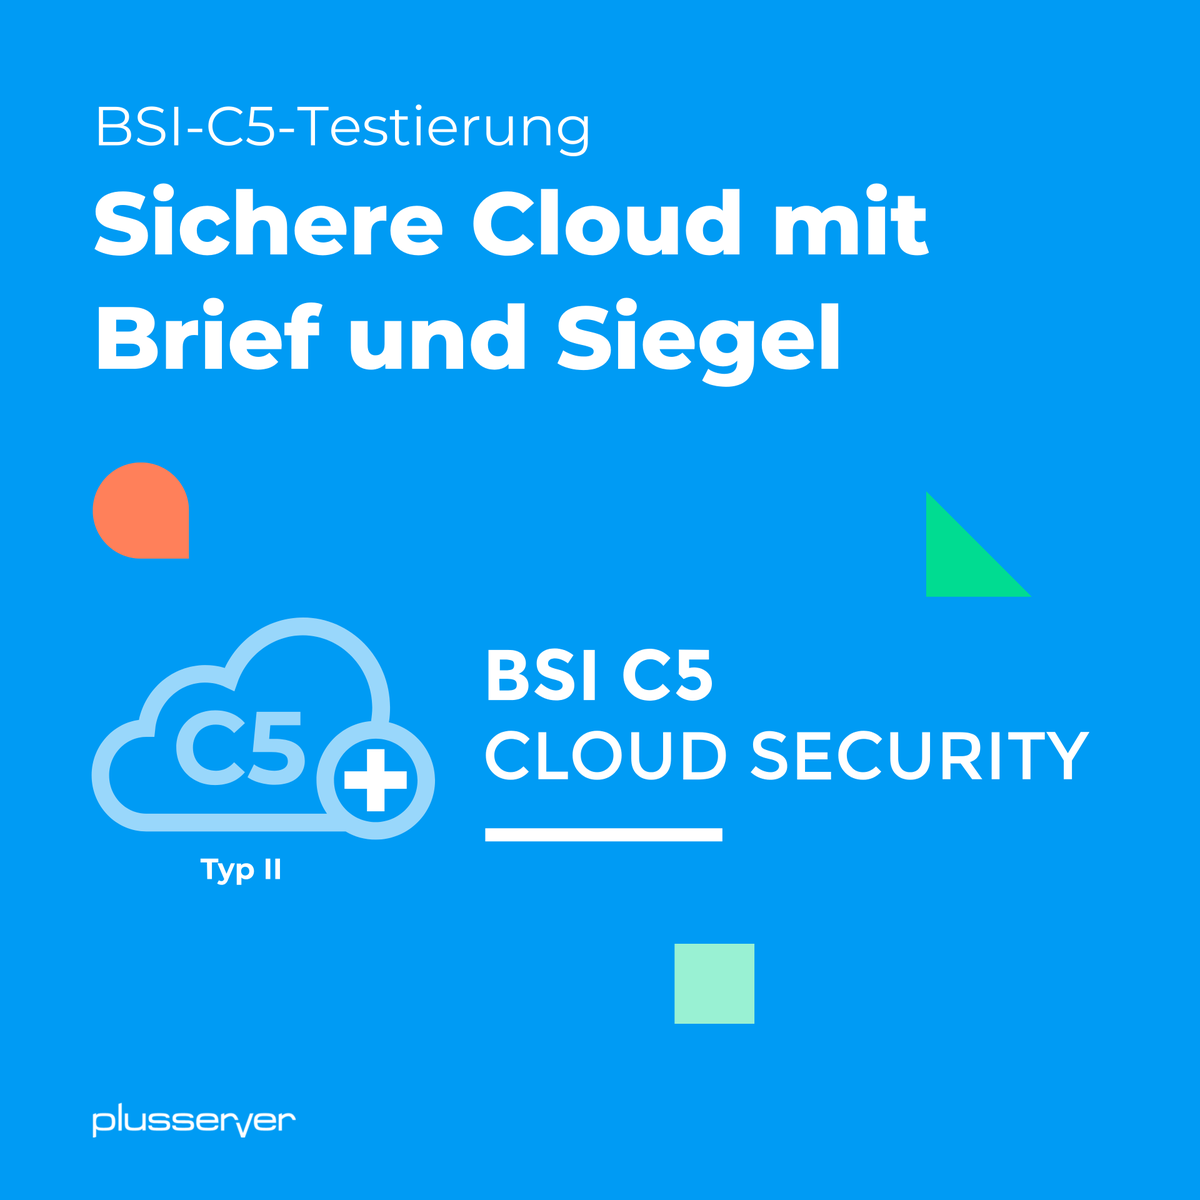 Cloud-Nutzende dürfen nicht vergessen, dass das Thema Security nicht allein beim Anbieter liegt.

Als Provider mit BSI-C5-Testat bieten wir unseren Kunden ein umfassendes Angebot an Security-Lösungen. PLUS die passende Beratung!

#Security #BSIC5 #Cloud #plusserver